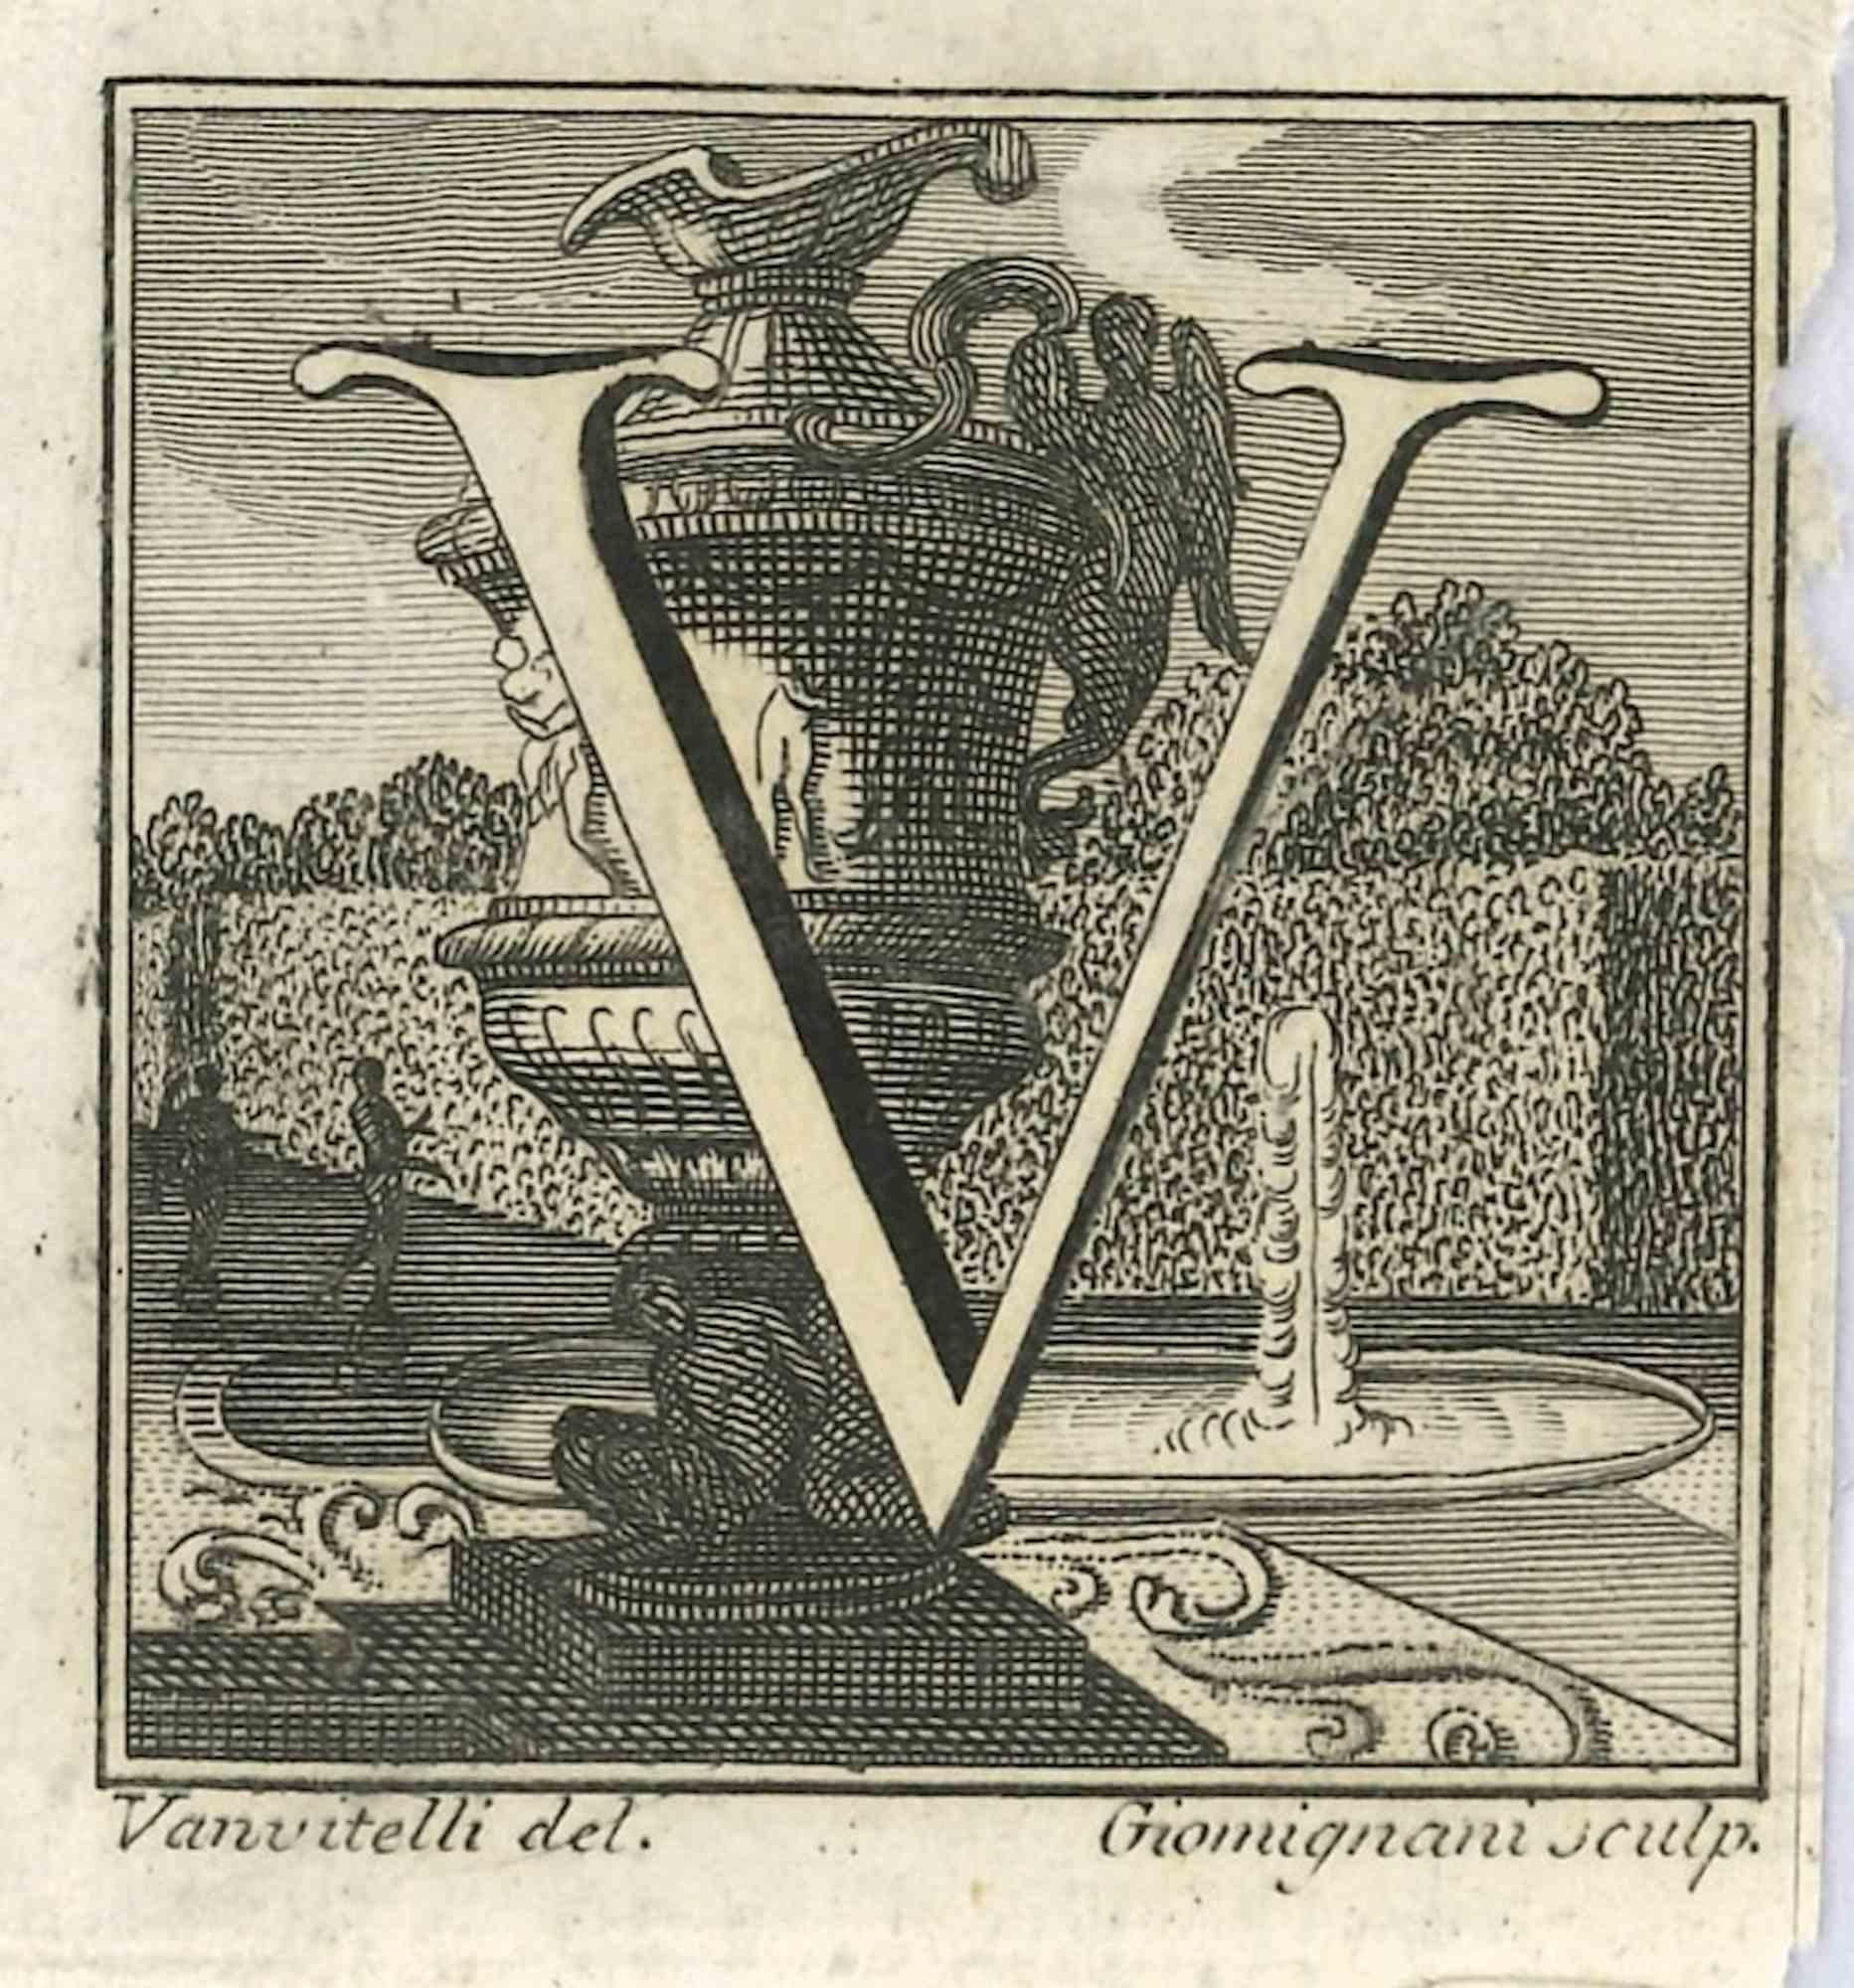 Lettre de l'alphabet V,  de la série "Antiquités d'Herculanum", est une gravure sur papier réalisée par Luigi Vanvitelli au 18ème siècle.

Bonnes conditions.

La gravure appartient à la suite d'estampes "Antiquités d'Herculanum exposées" (titre